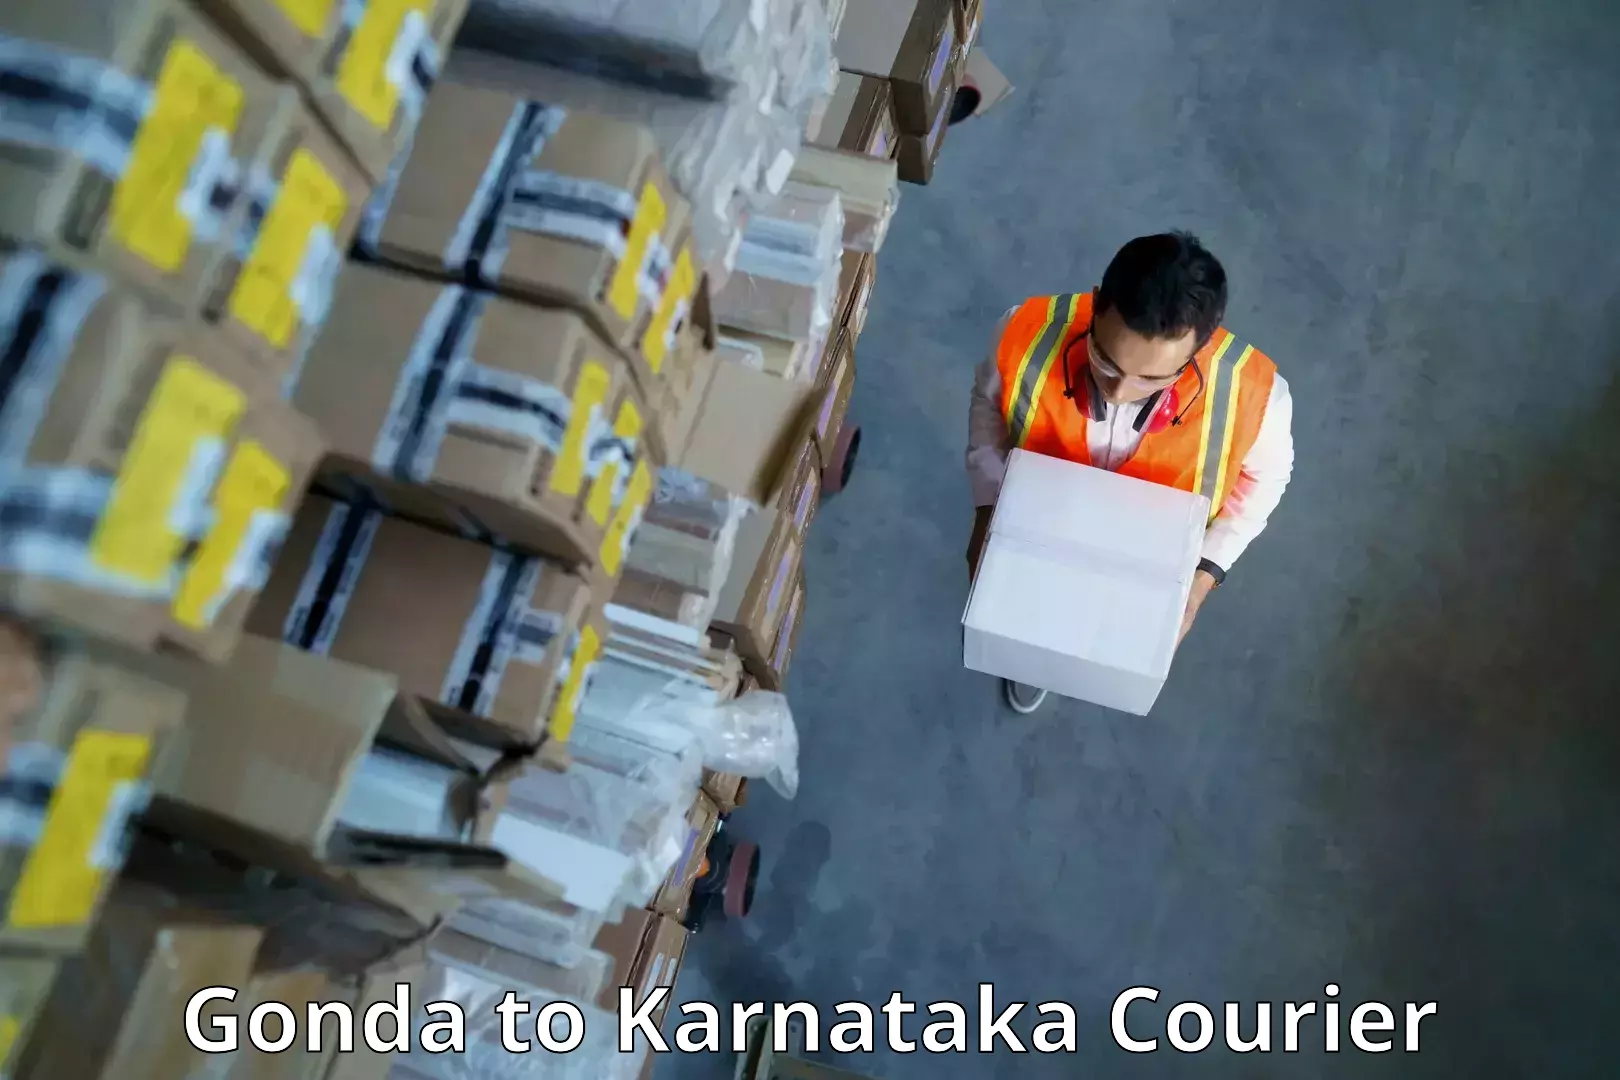 Same-day delivery solutions Gonda to Dakshina Kannada